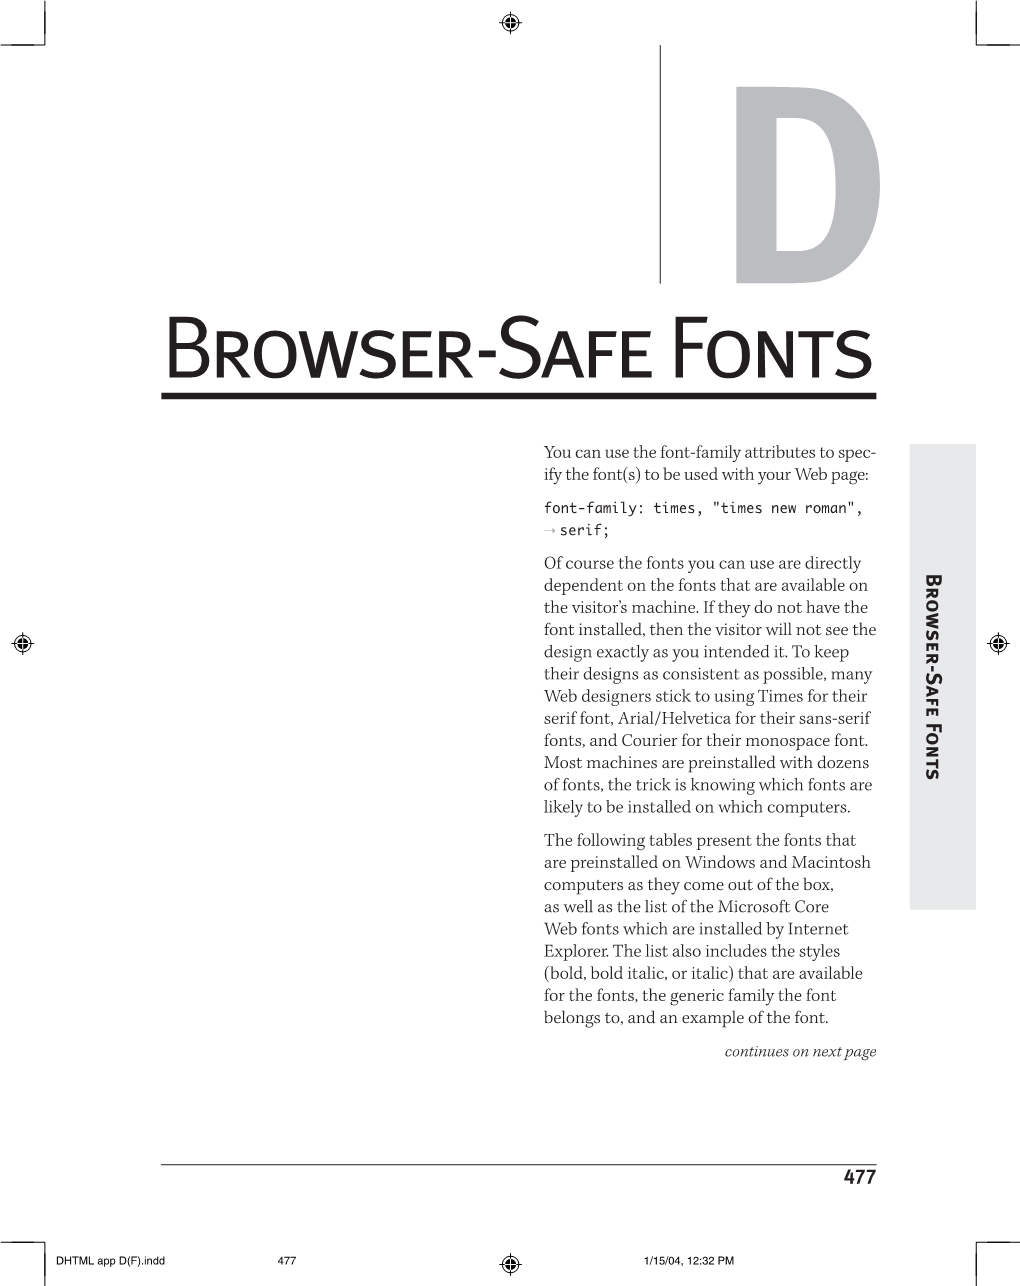 Browser-Safe Fonts